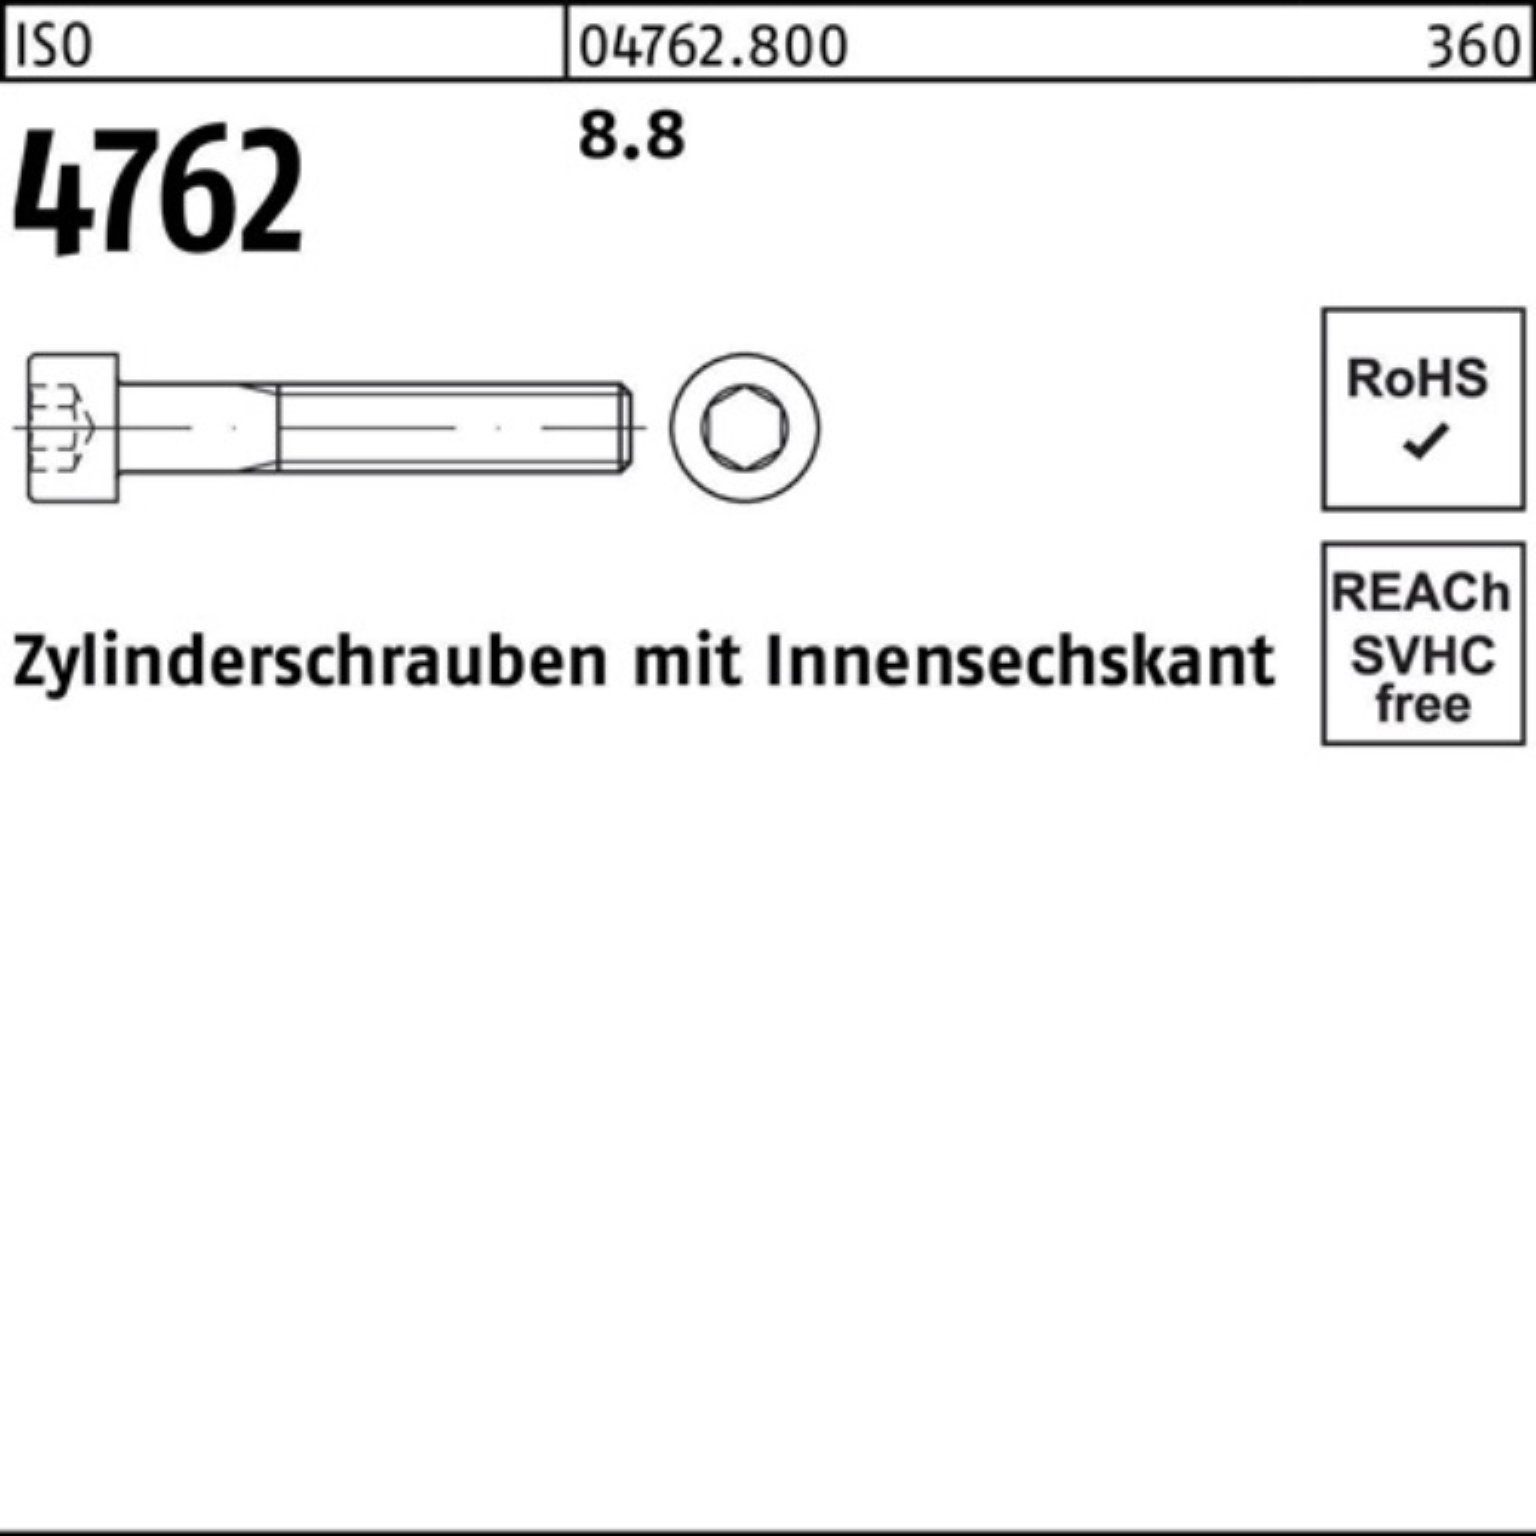 Stück ISO Pack Zylinderschraube Innen-6kt 100er 4762 8.8 100 M10x Zylinderschraube Reyher 45